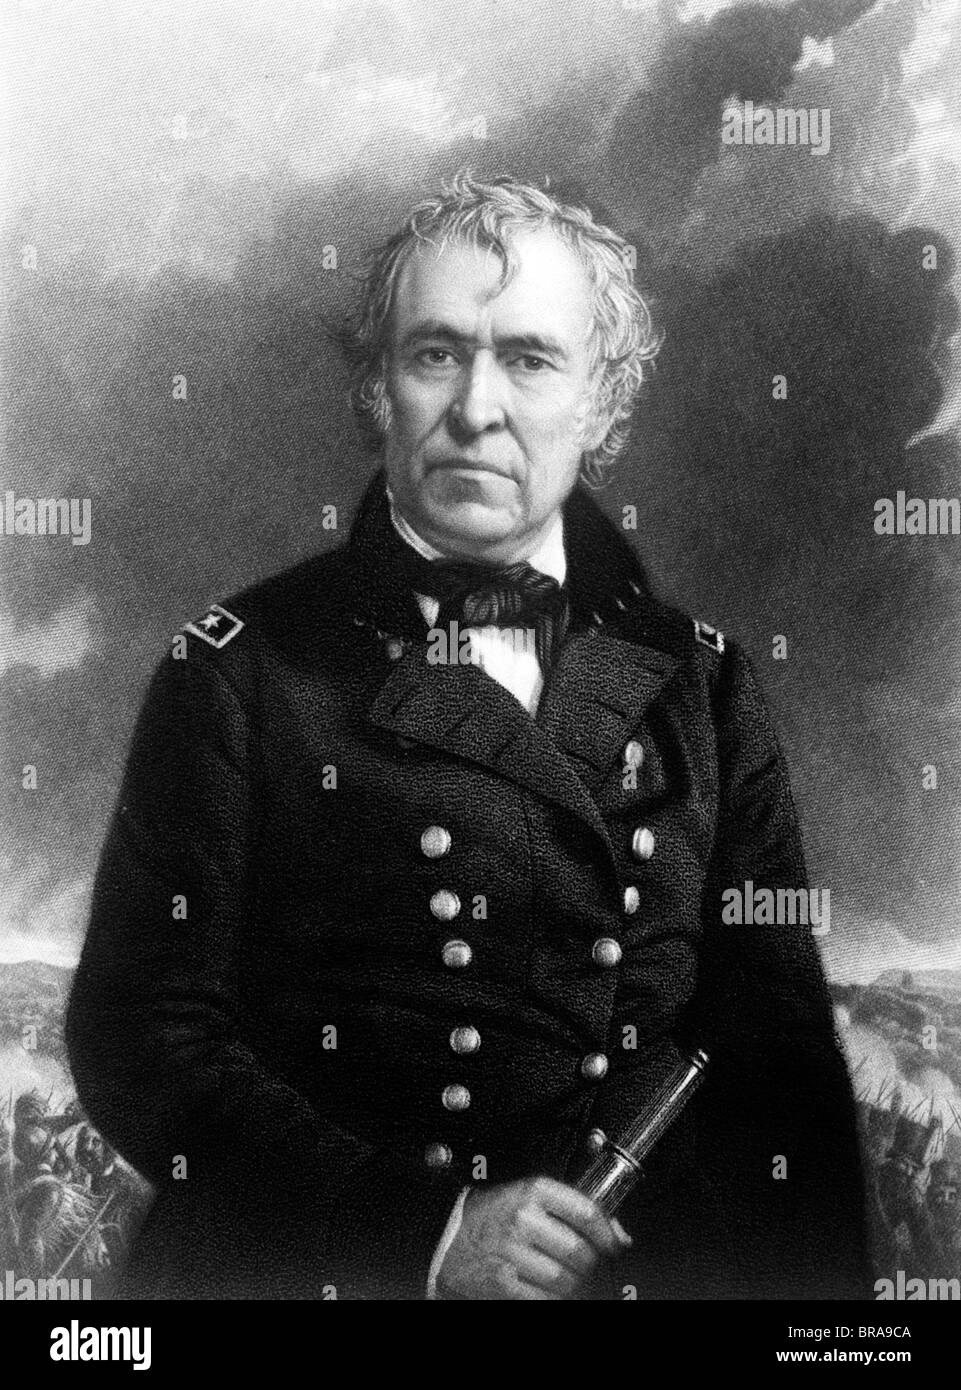 1800s ritratto Zachary Taylor in uniforme militare dodicesimo presidente americano Foto Stock